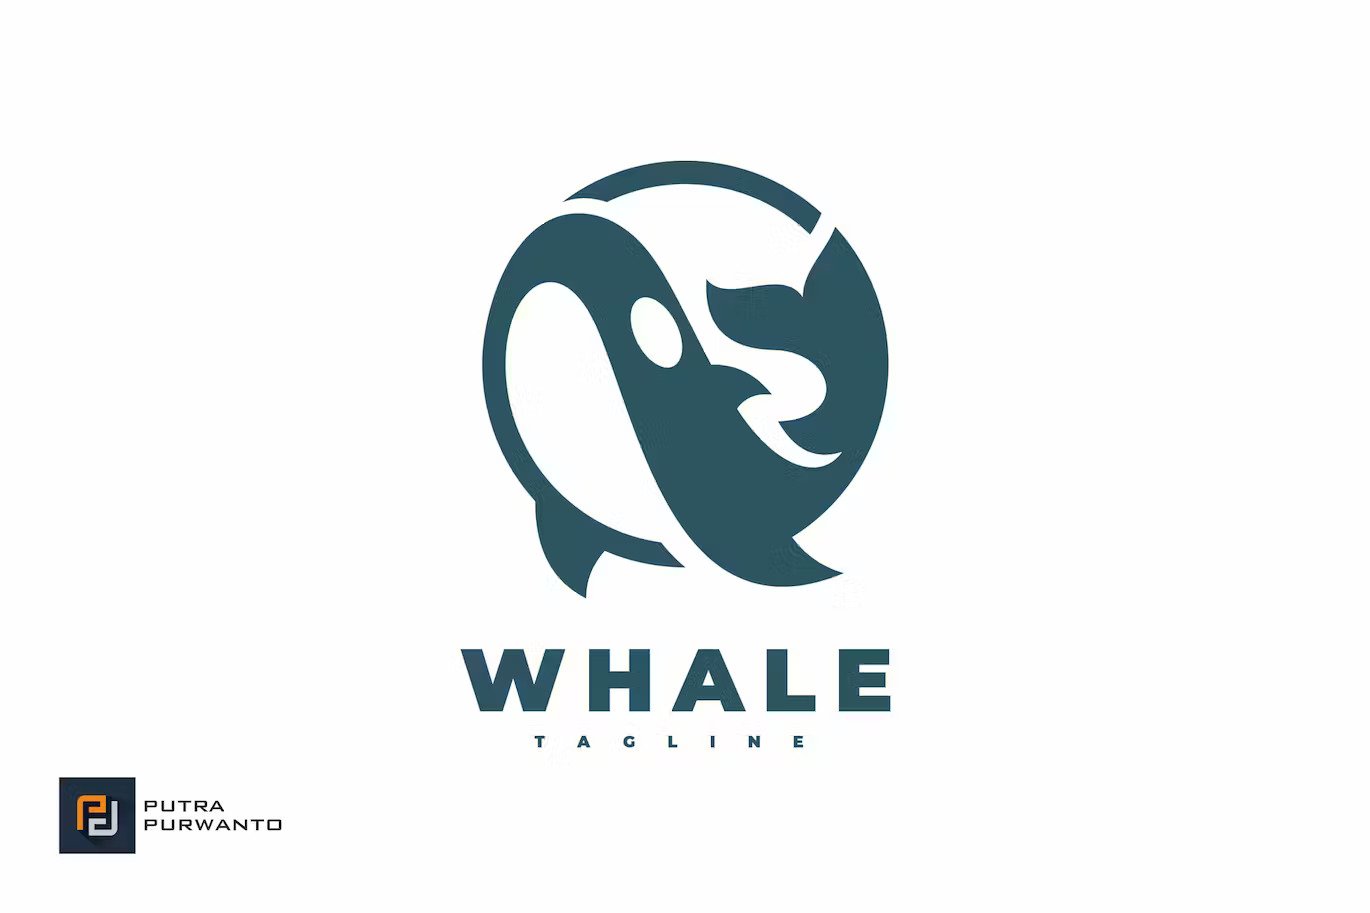 A whale logo template